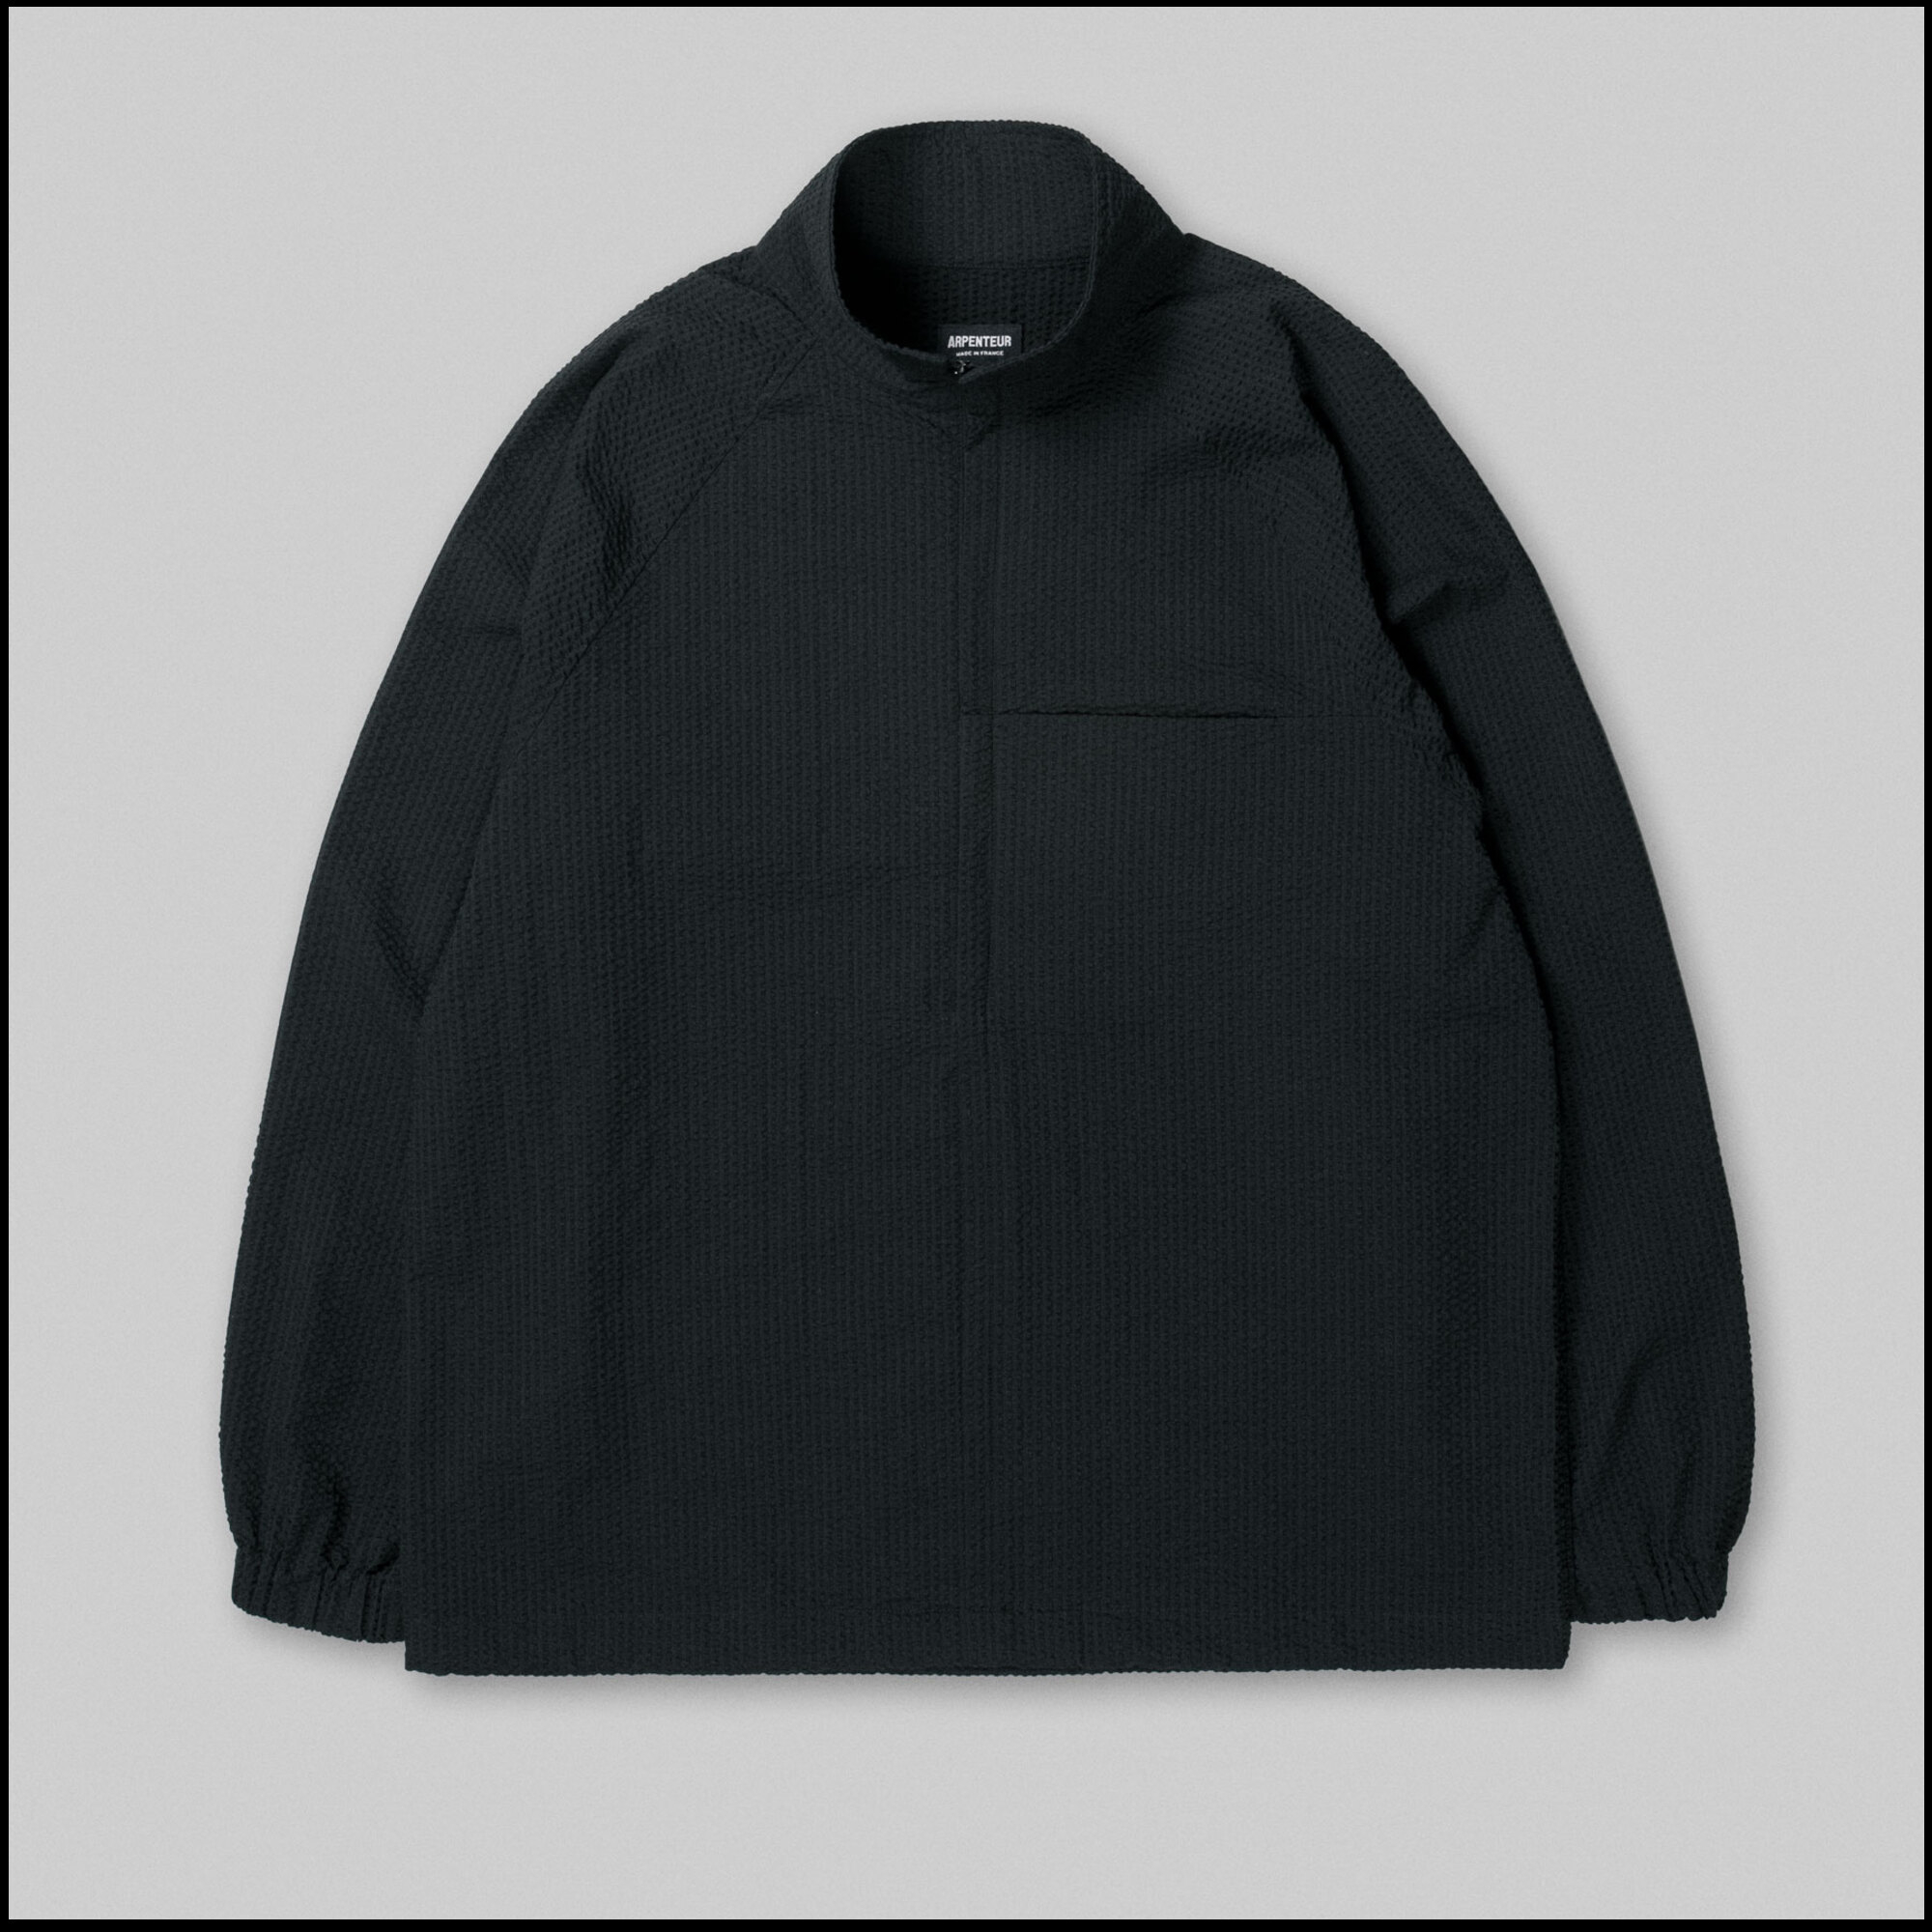 TRACK Jacket by Arpenteur in Black color